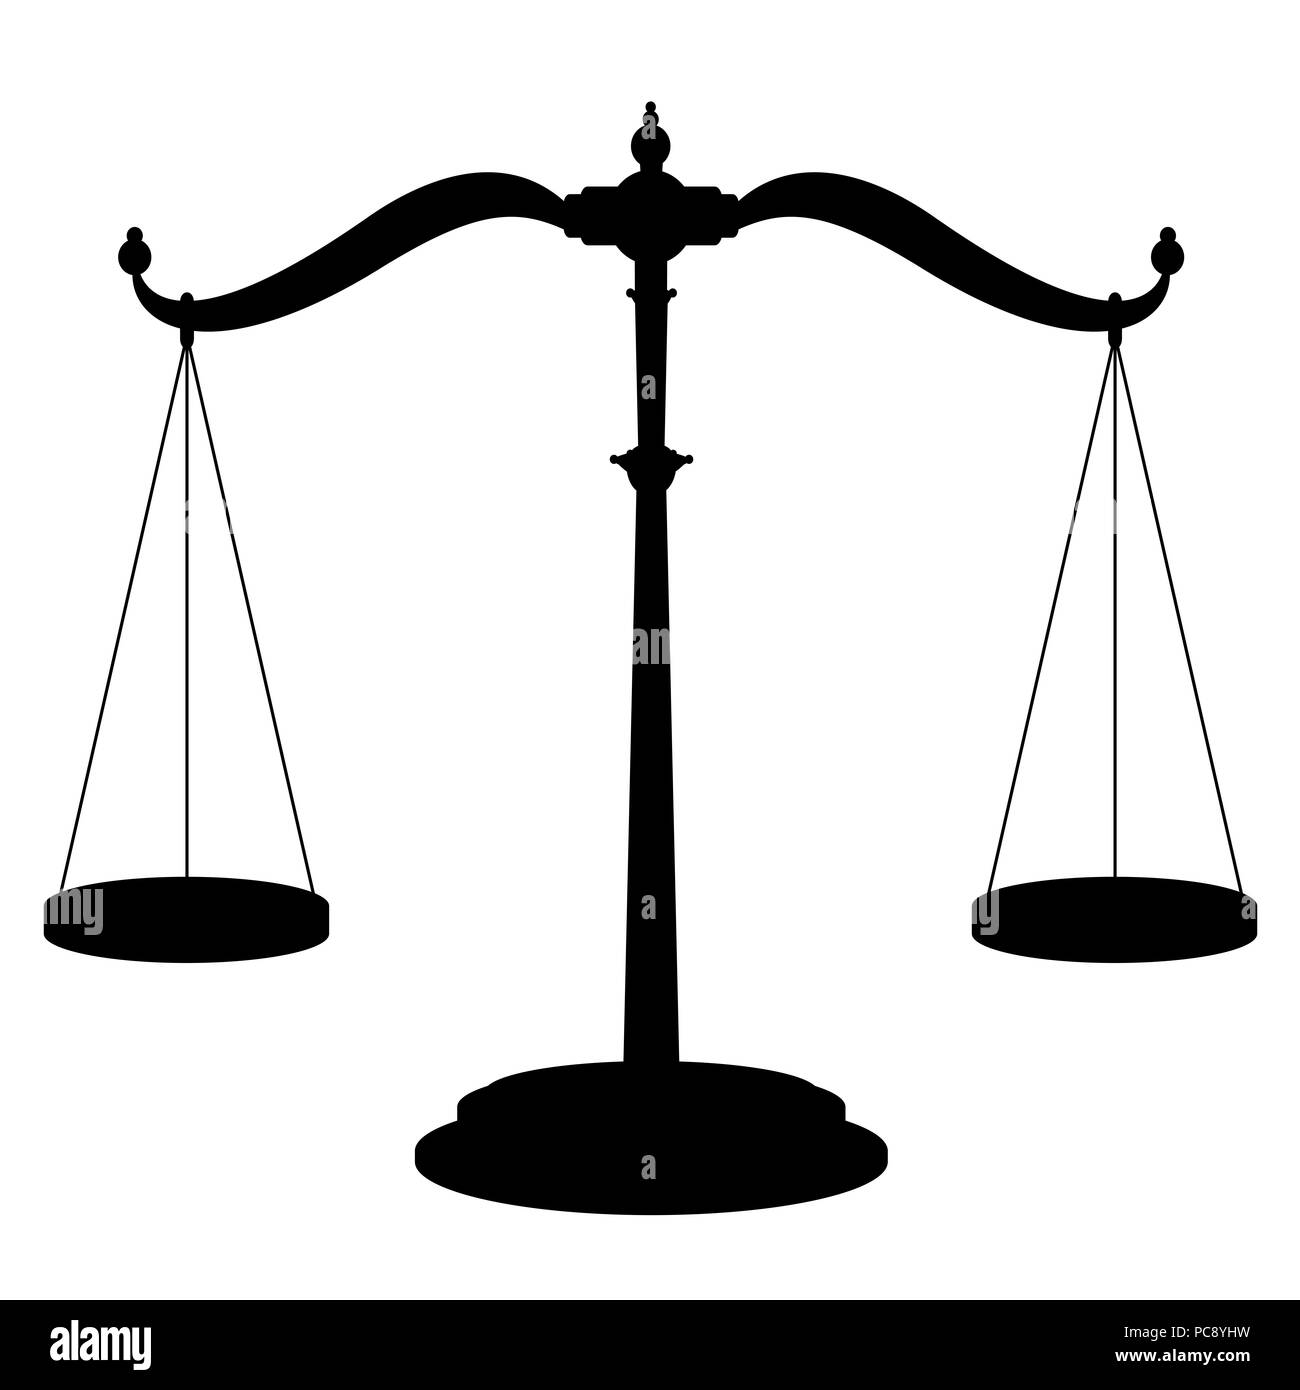 Balanza - símbolo de icono de dispositivo de pesaje con dos recipientes colgantes perfectamente equilibrado - ilustración en negro sobre fondo blanco. Foto de stock